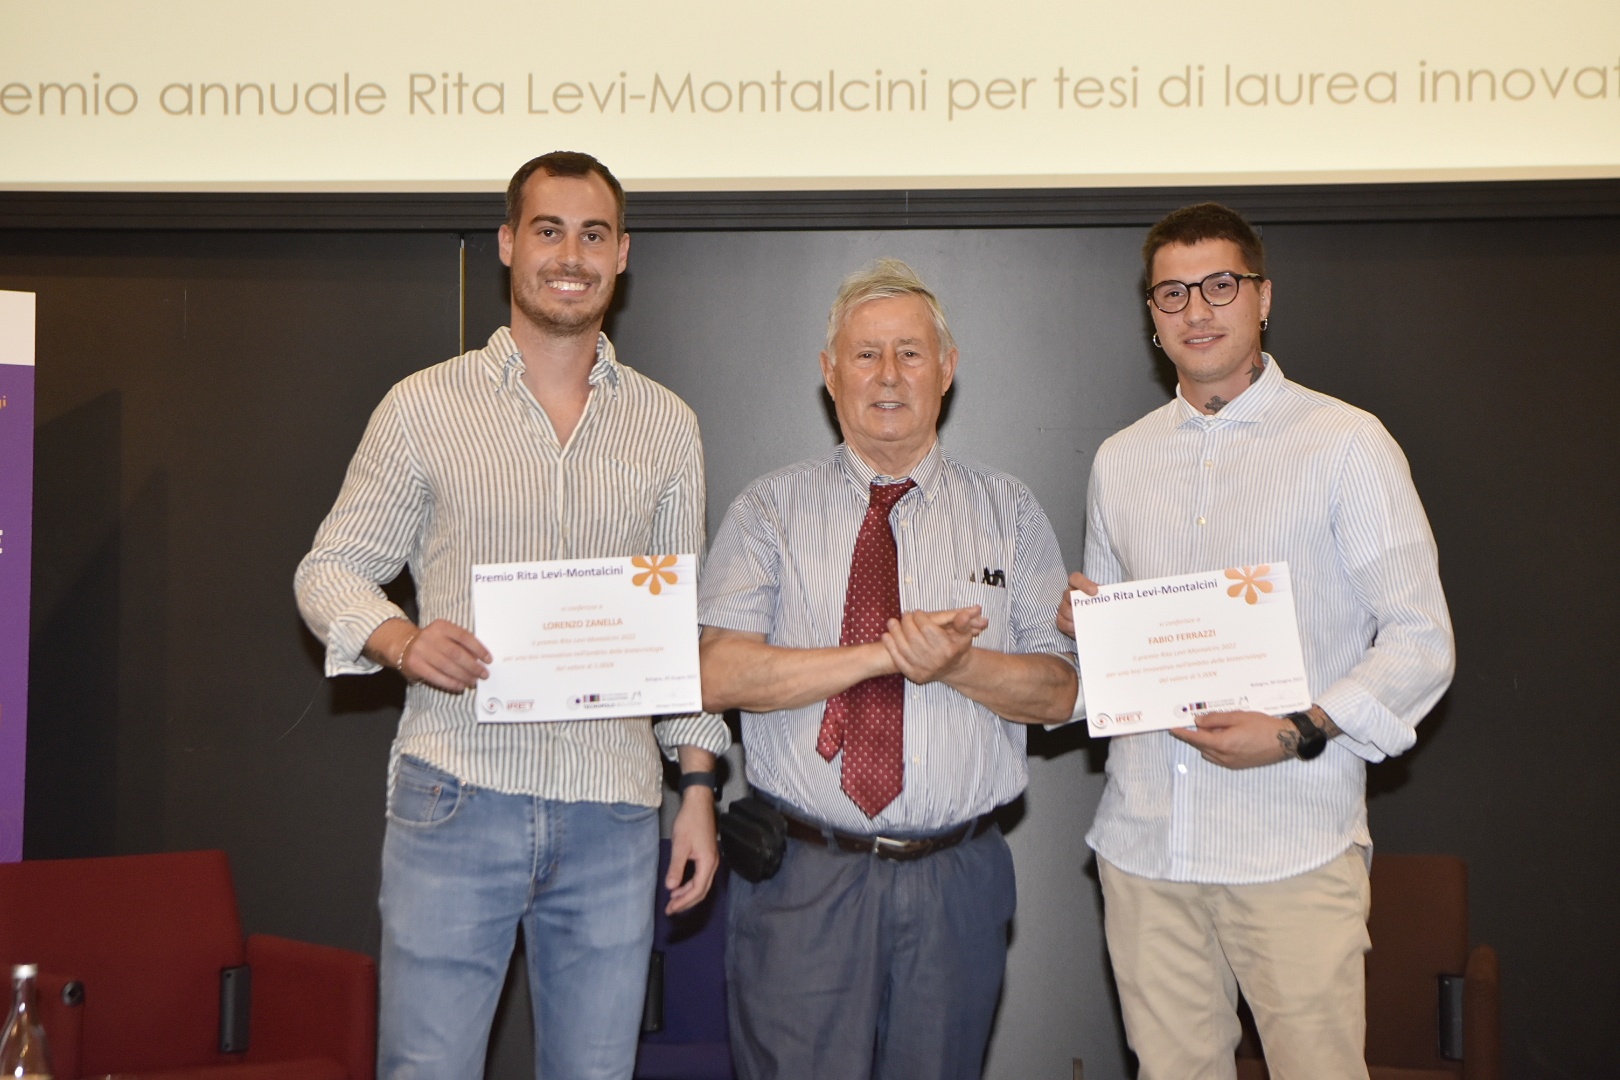 (Italiano) Consegnati i primi due premi di studio intitolati a Rita Levi-Montalcini